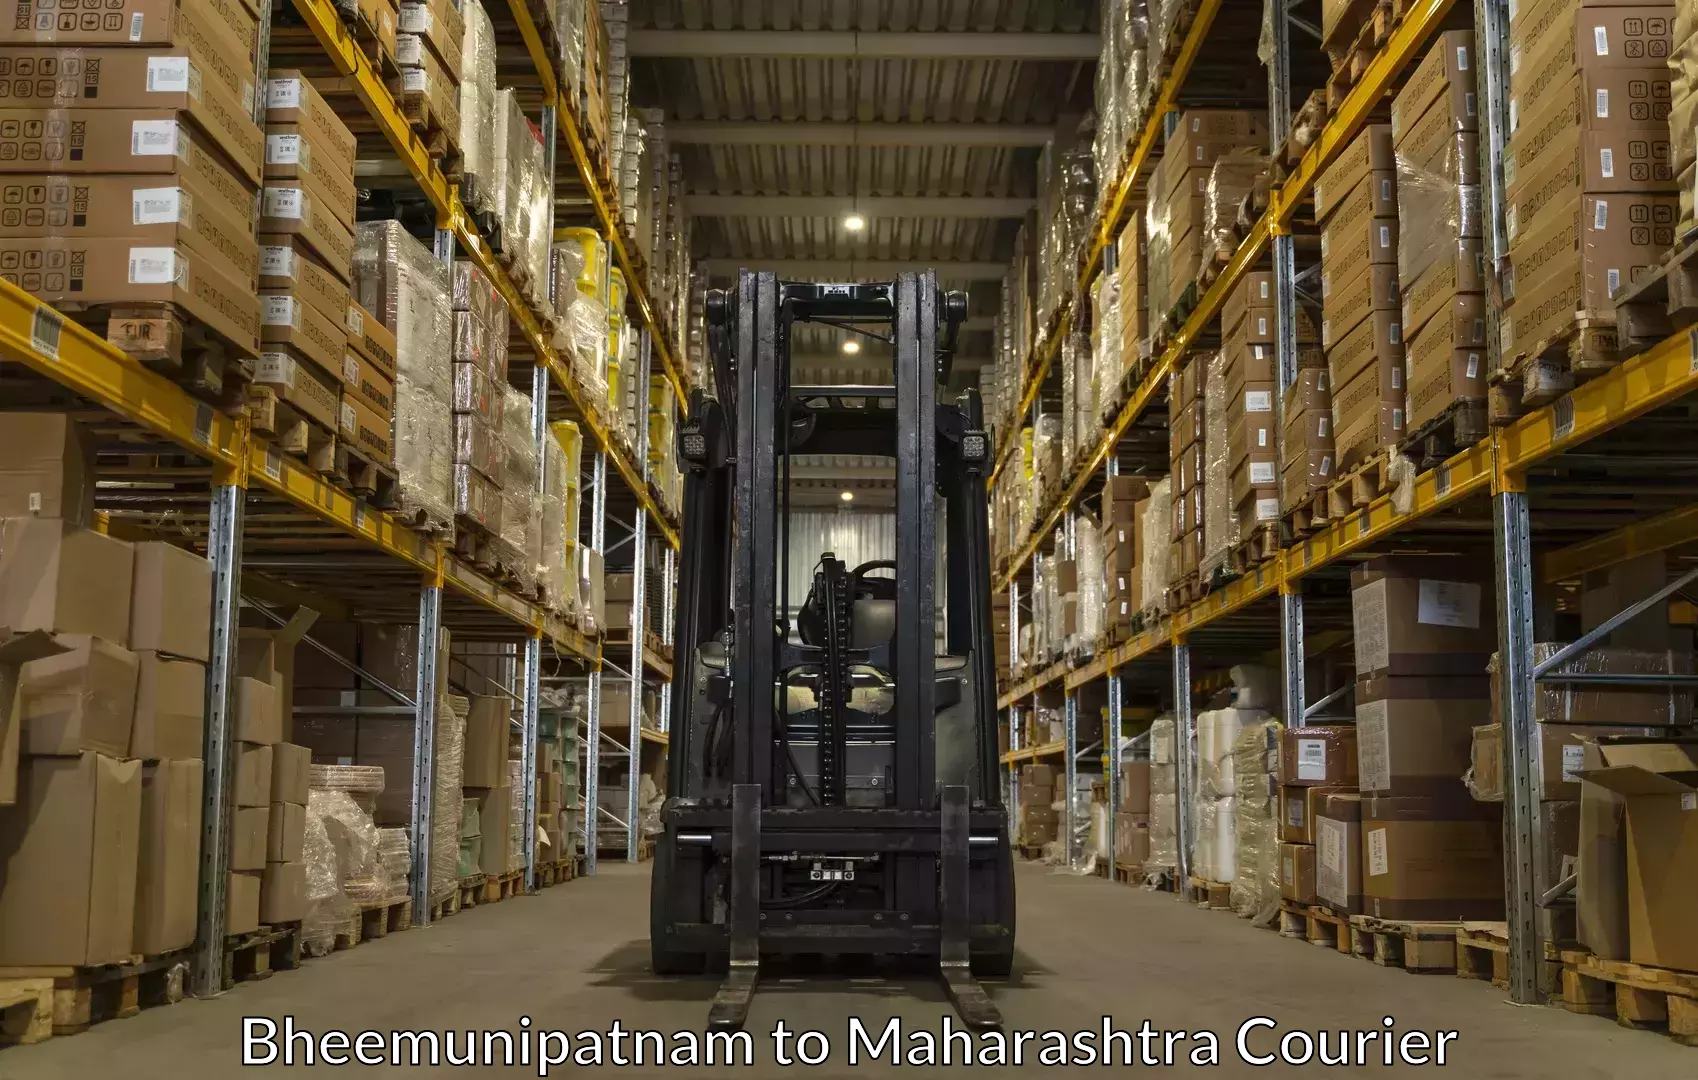 Professional moving company Bheemunipatnam to Maharashtra